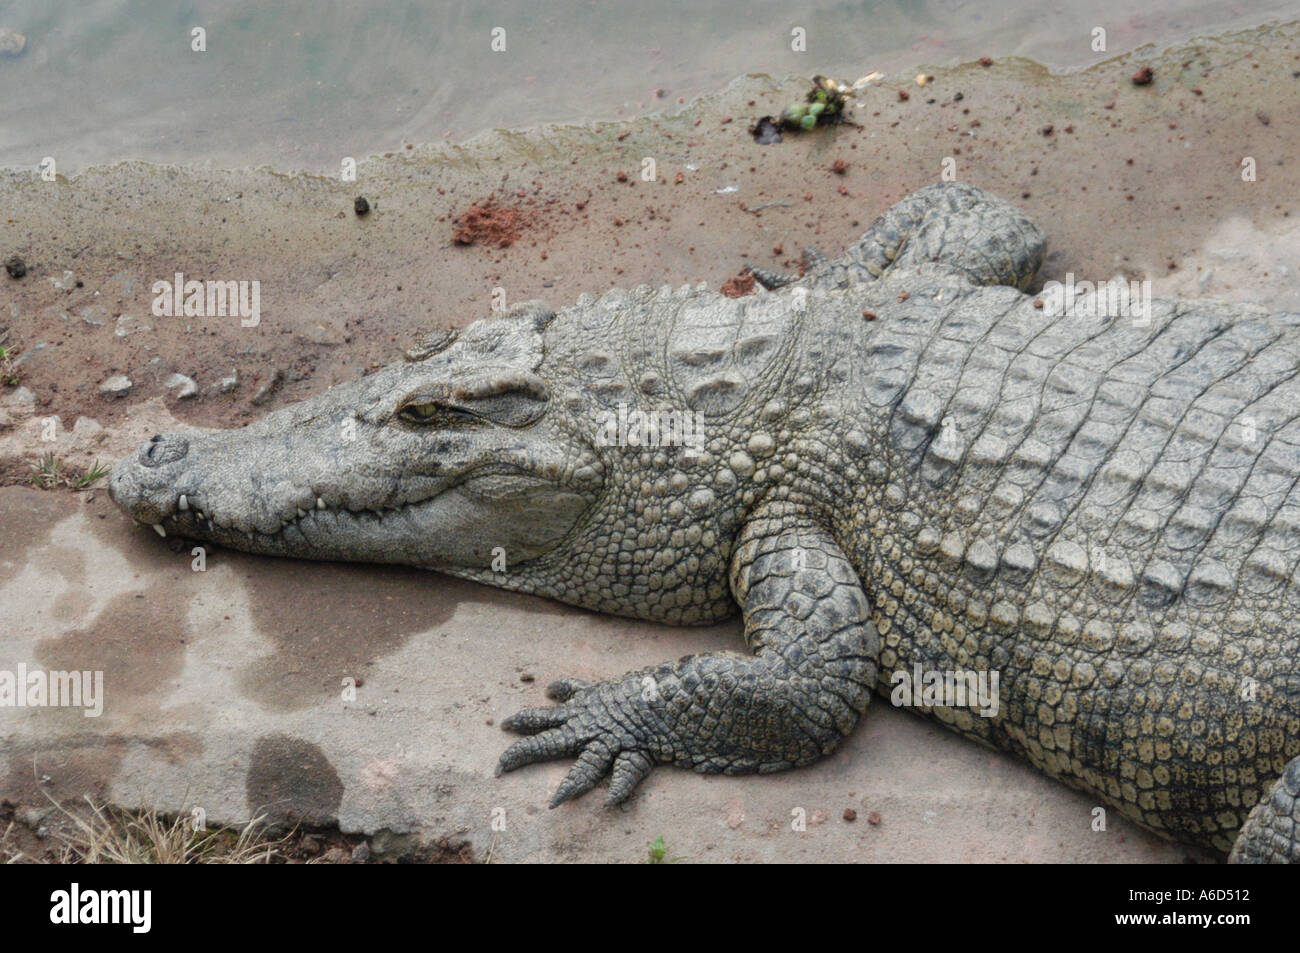 crocodile in china Stock Photo